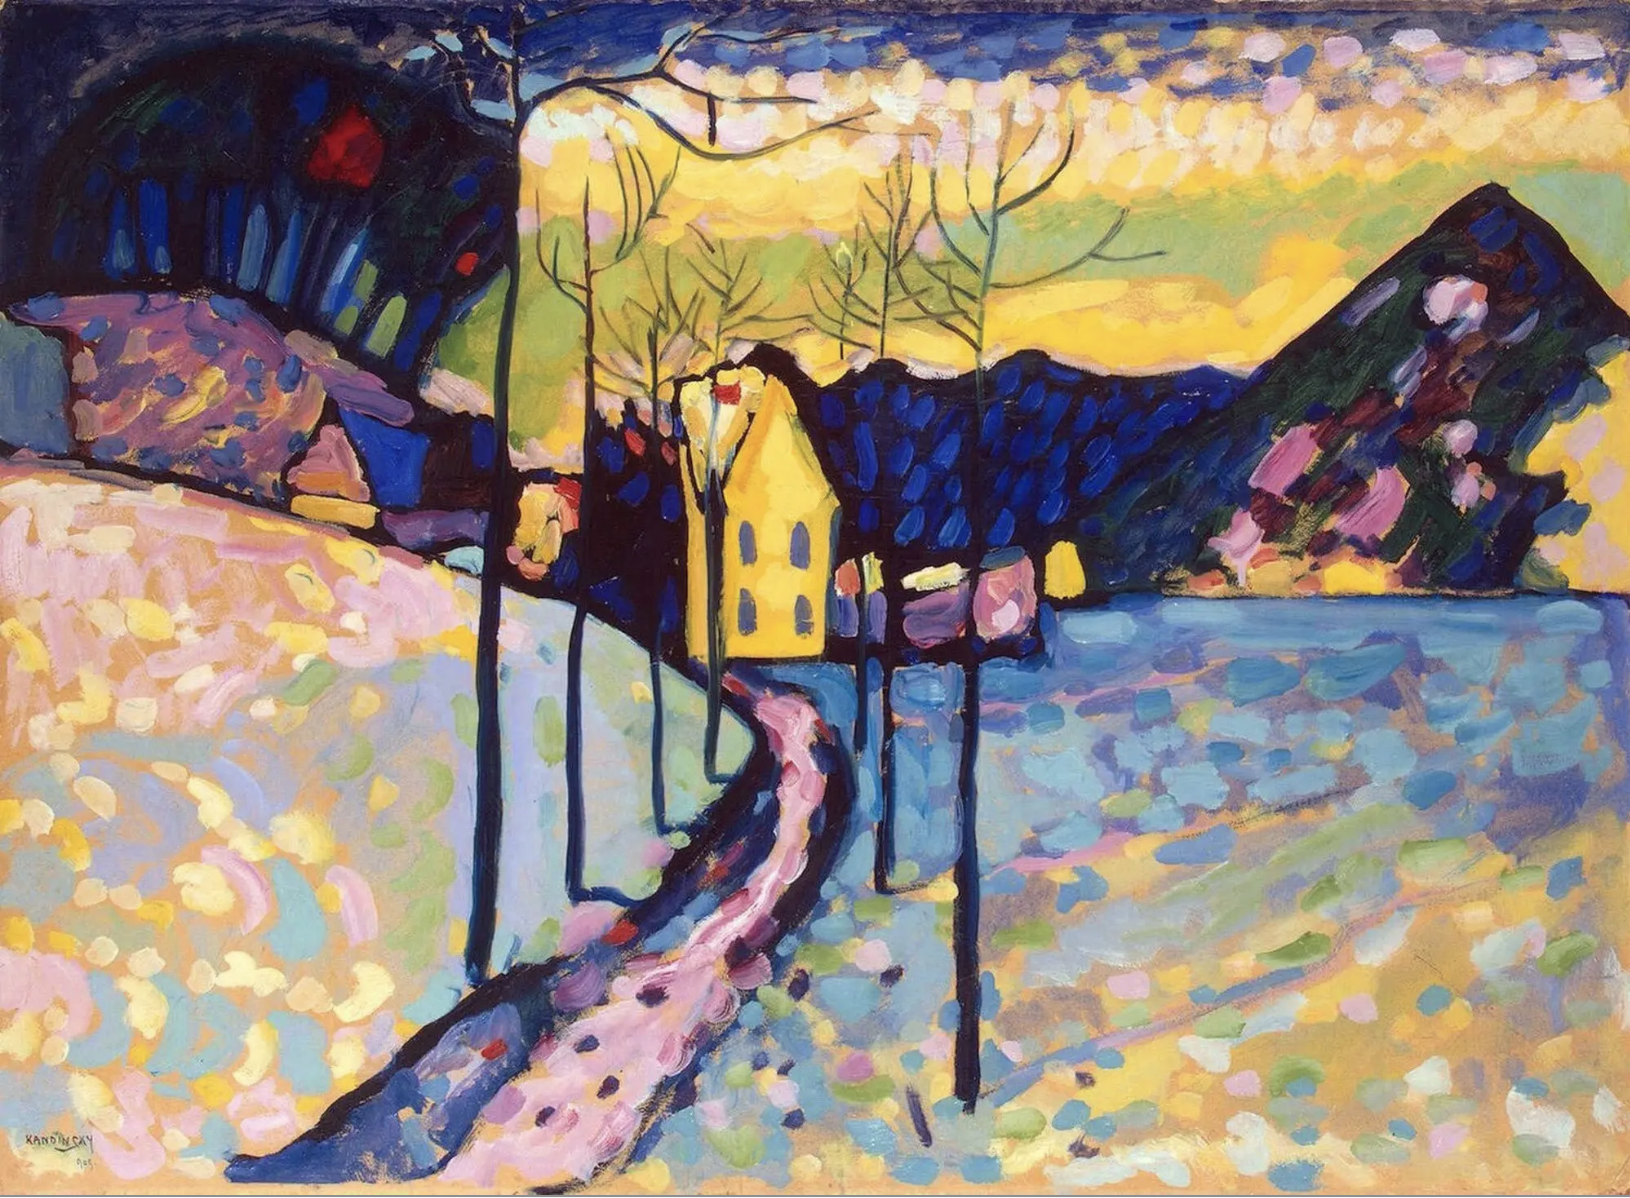 The Wick - Winter Landscape, Wassily Kandinsky, 1909
